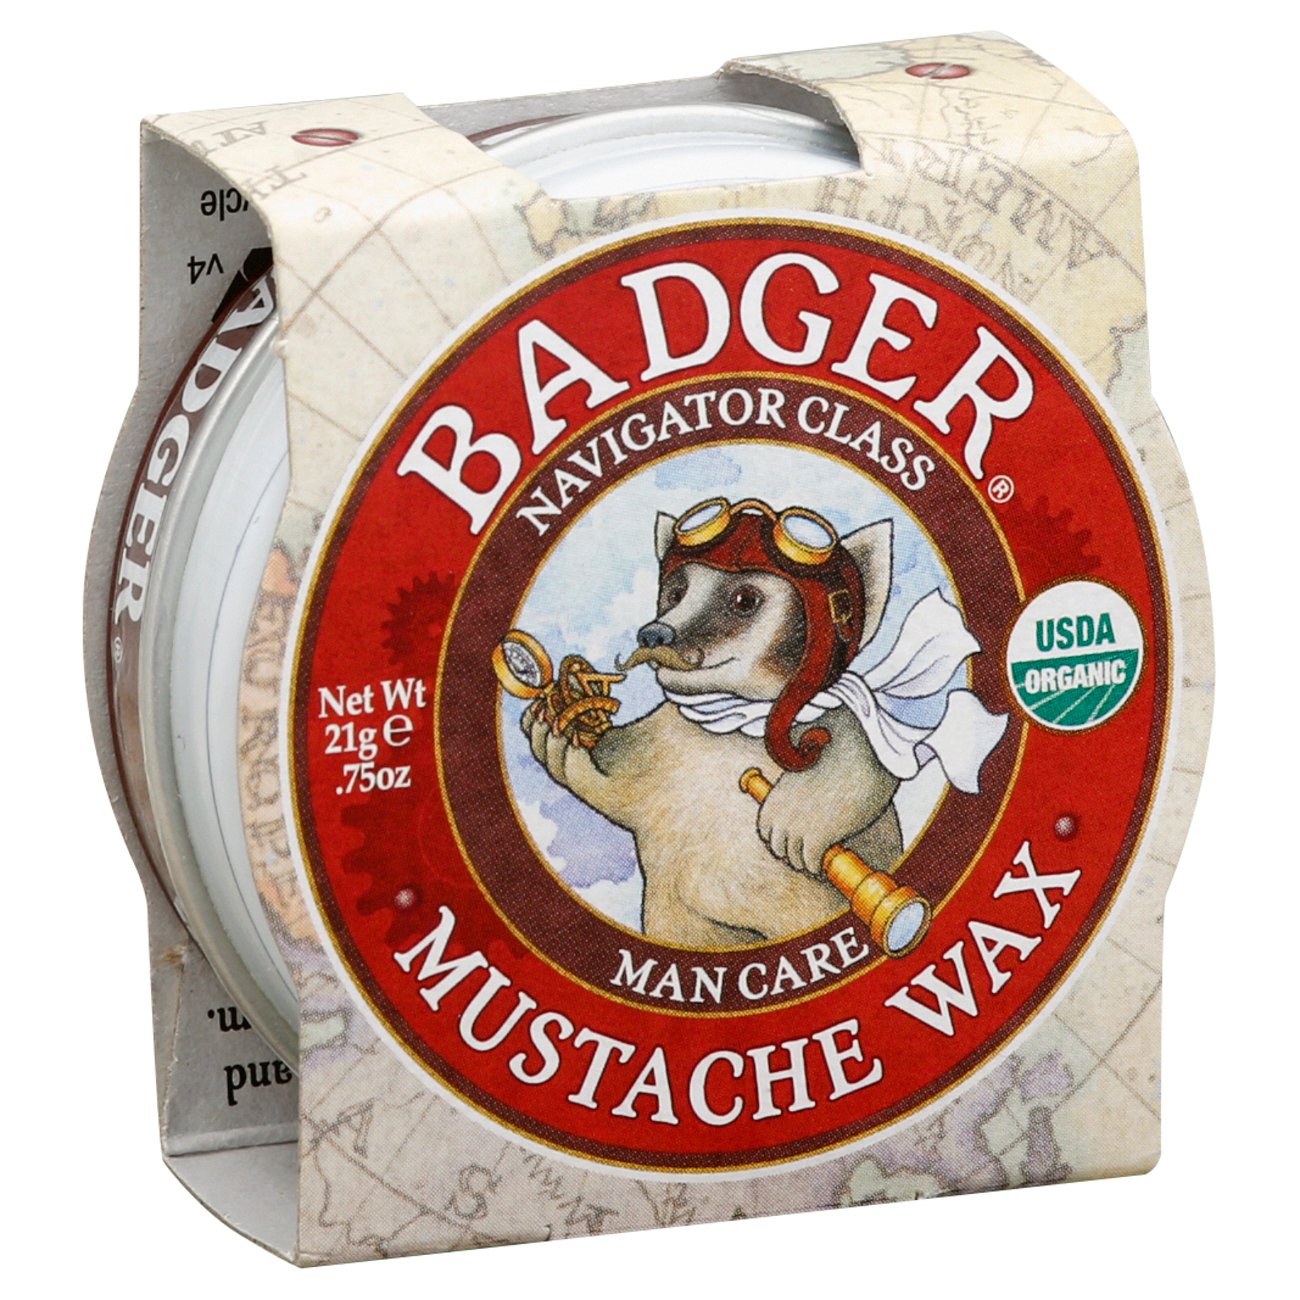 Voorbijganger Kinderrijmpjes Achternaam Badger Navigator Class Man Care Mustache Wax - Shop Bath & Skin Care at  H-E-B